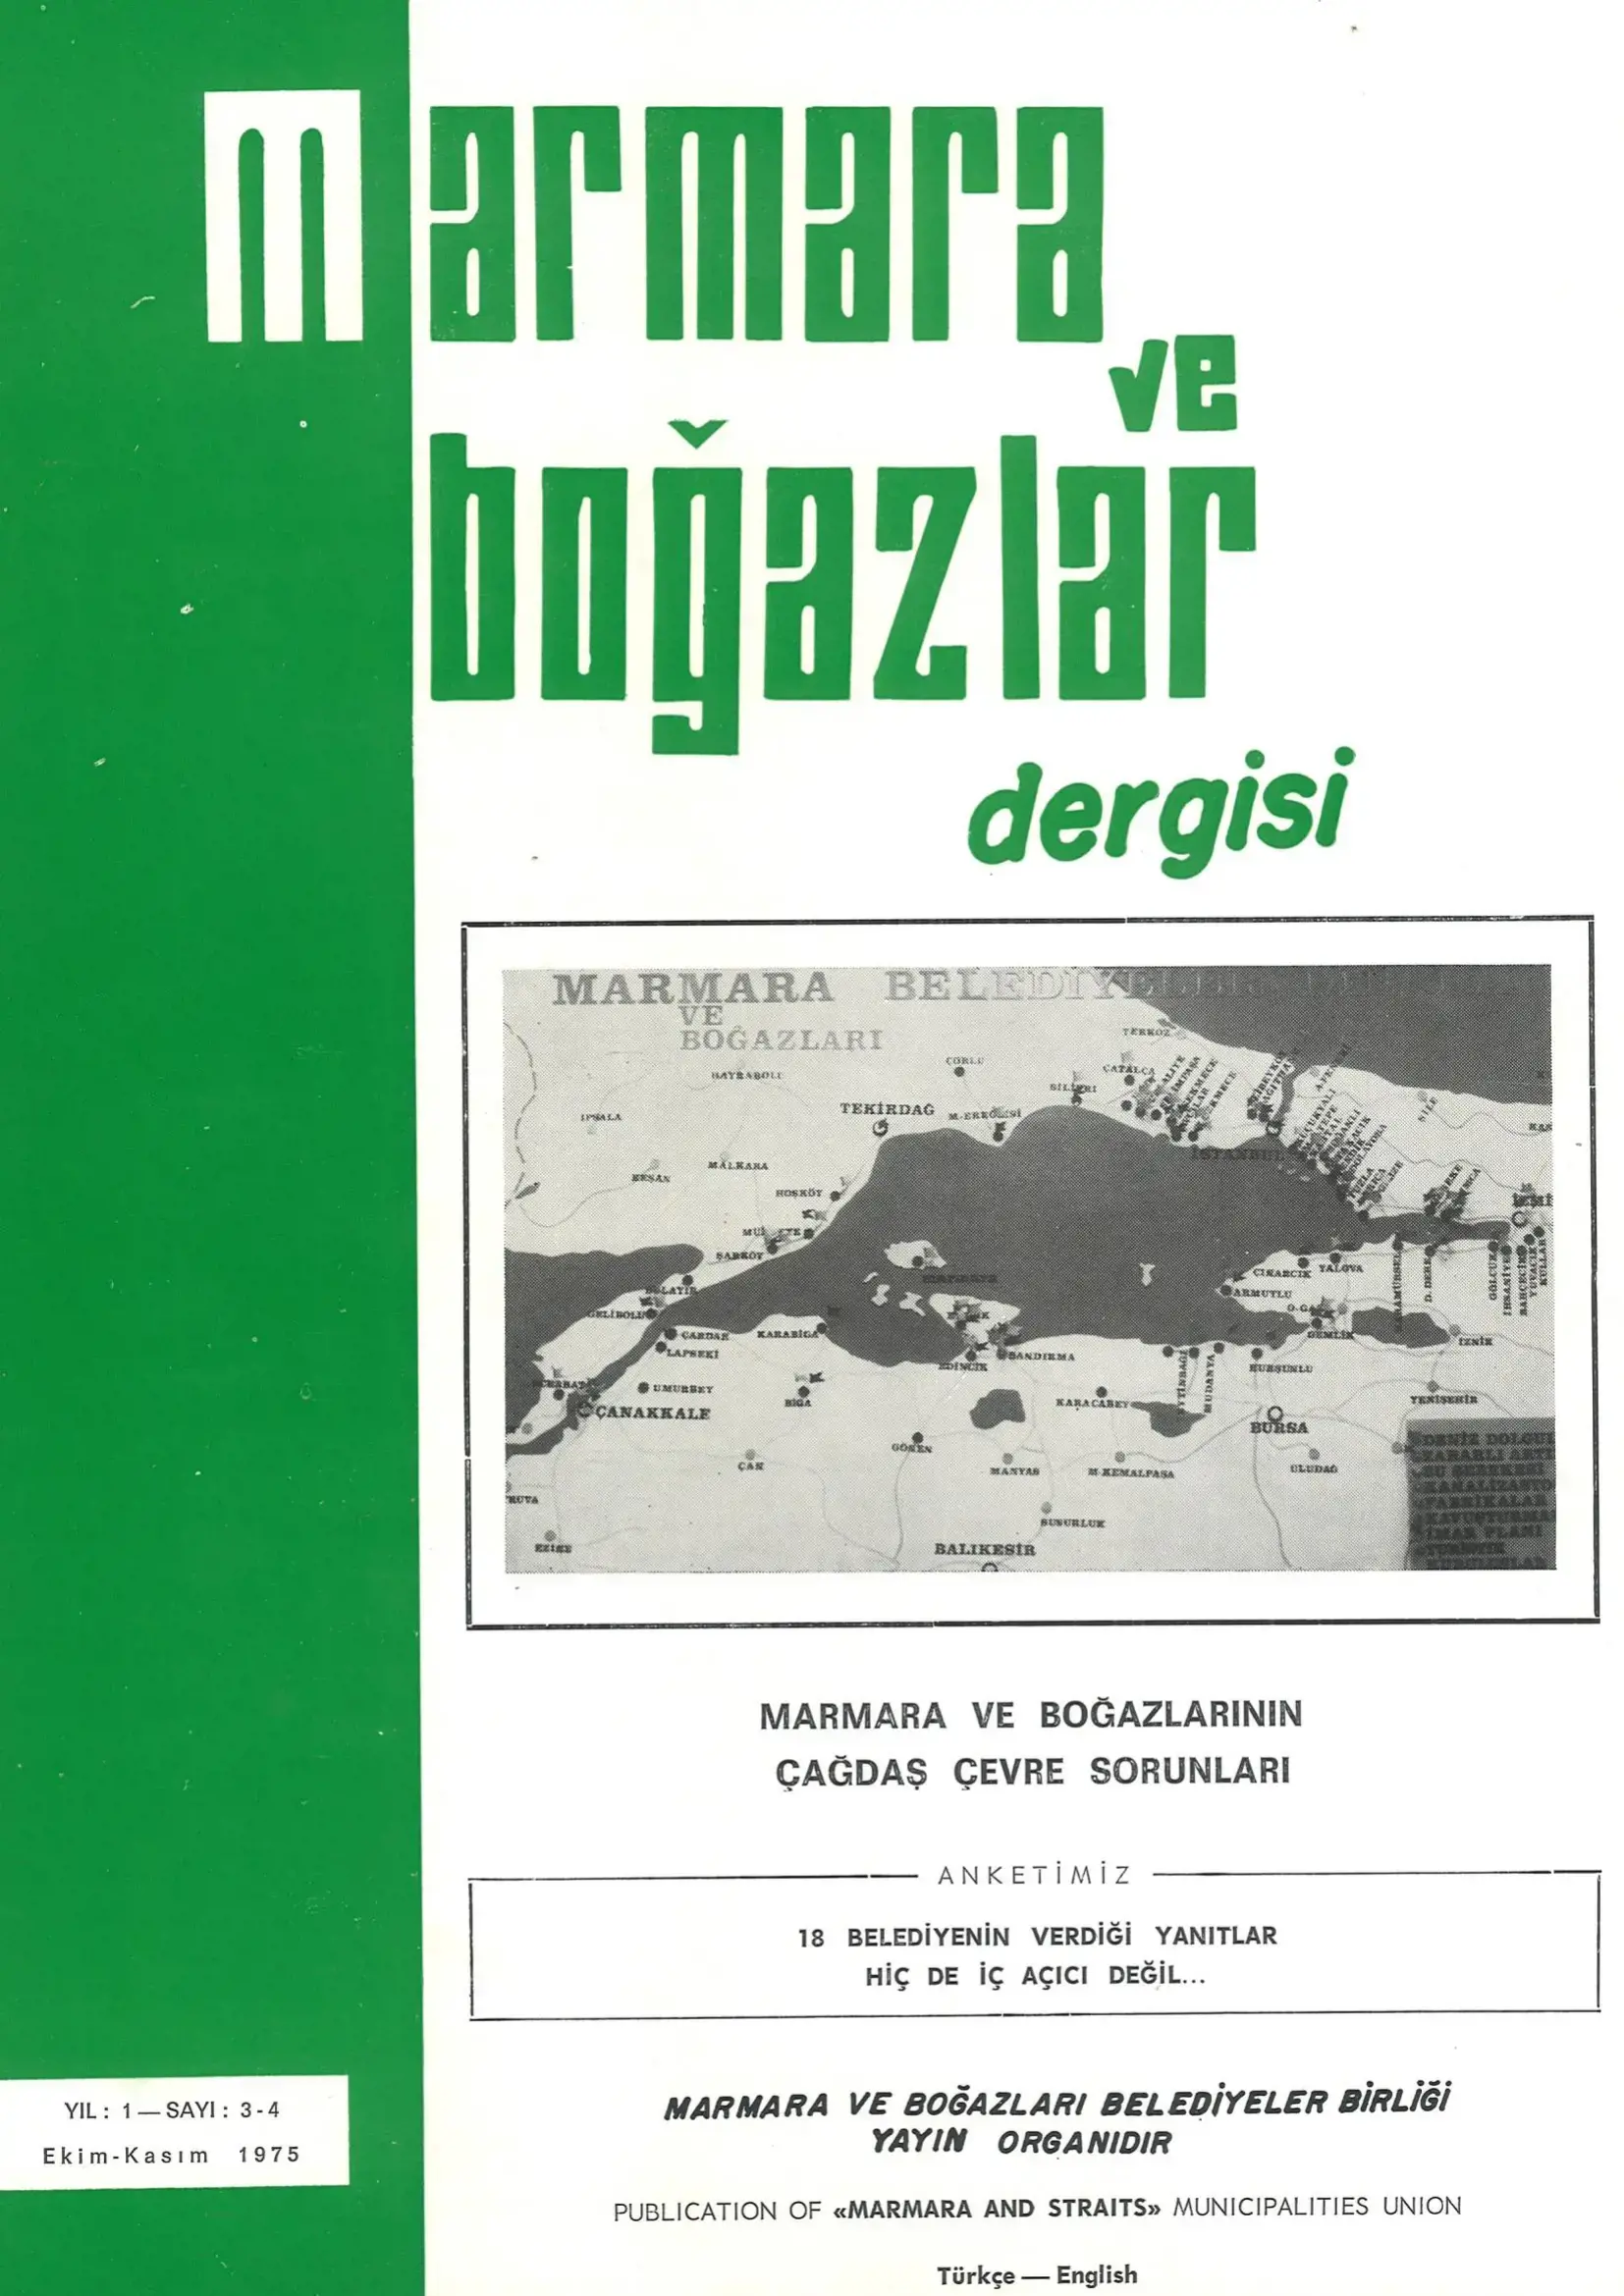 Marmara ve Boğazlar Dergisi - Ekim-Kasım 1975
                                    Resmi